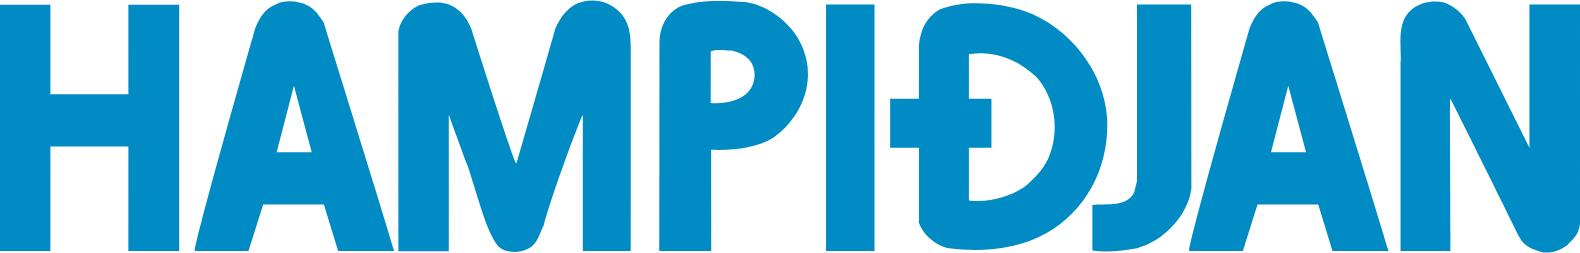 Hampiðjan logo large (transparent PNG)